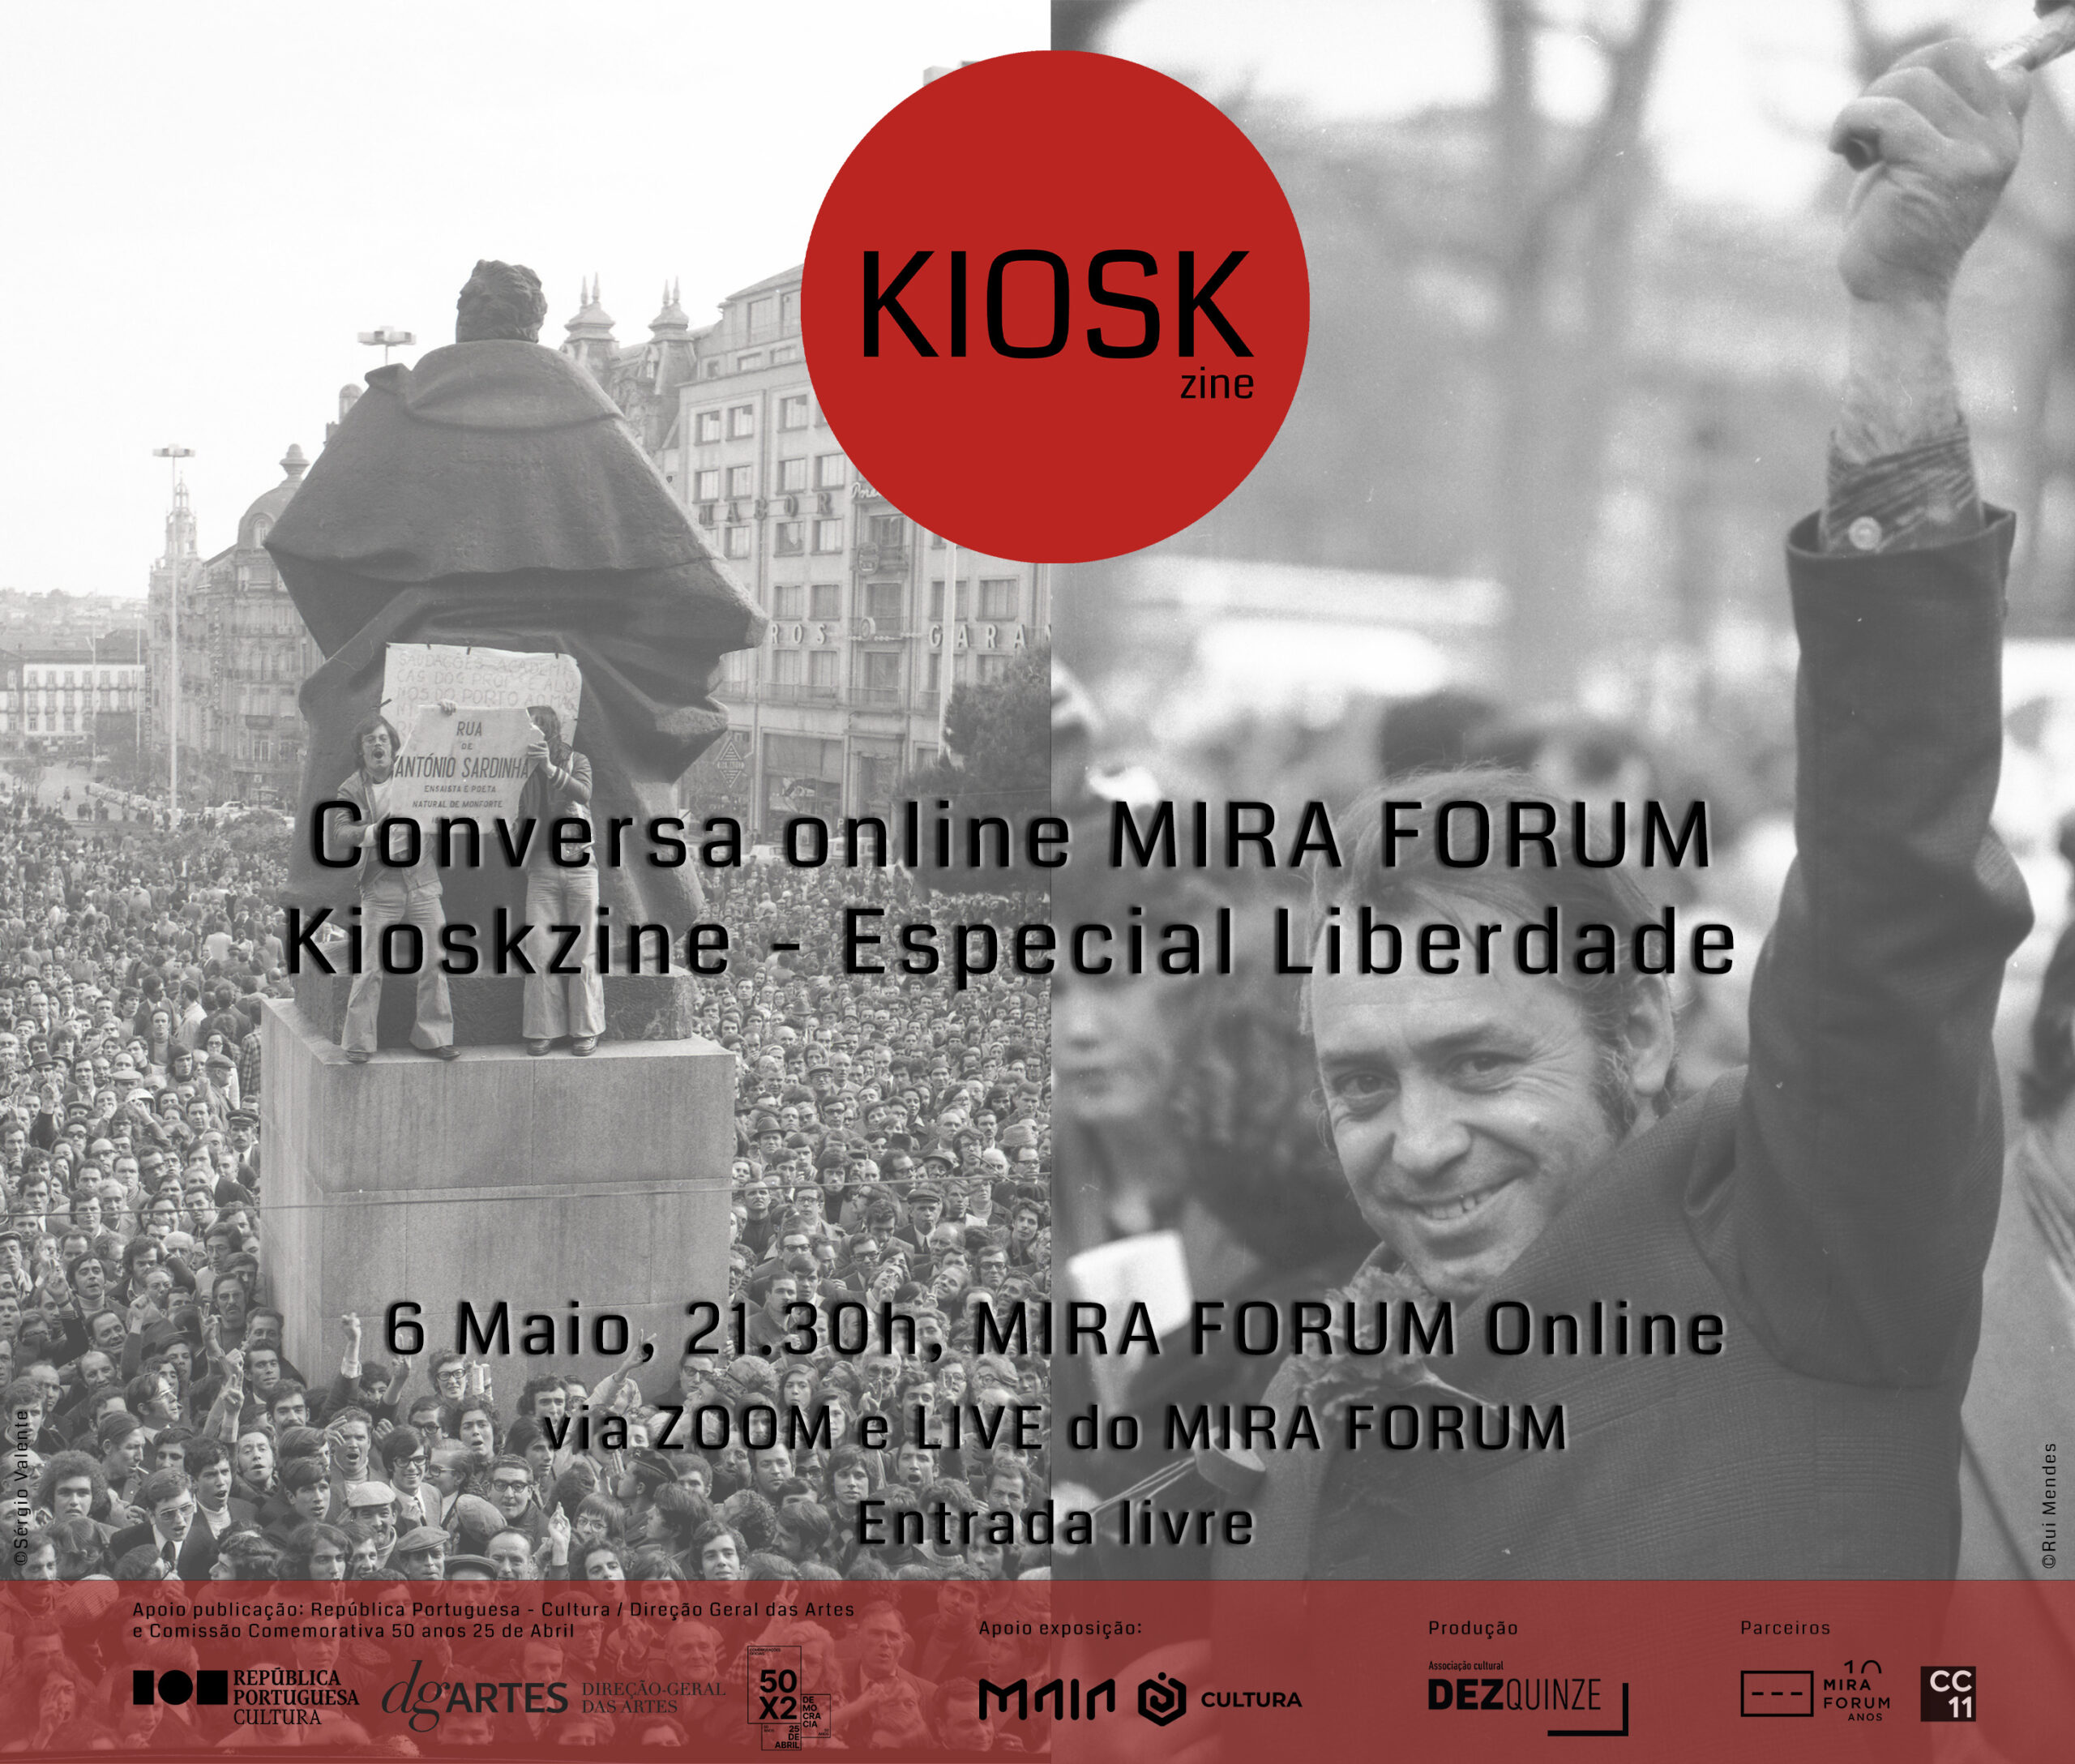 Capa Oficial do Evento Kioskzine - Especial Liberdade - Conversa online no MIRA FORUM